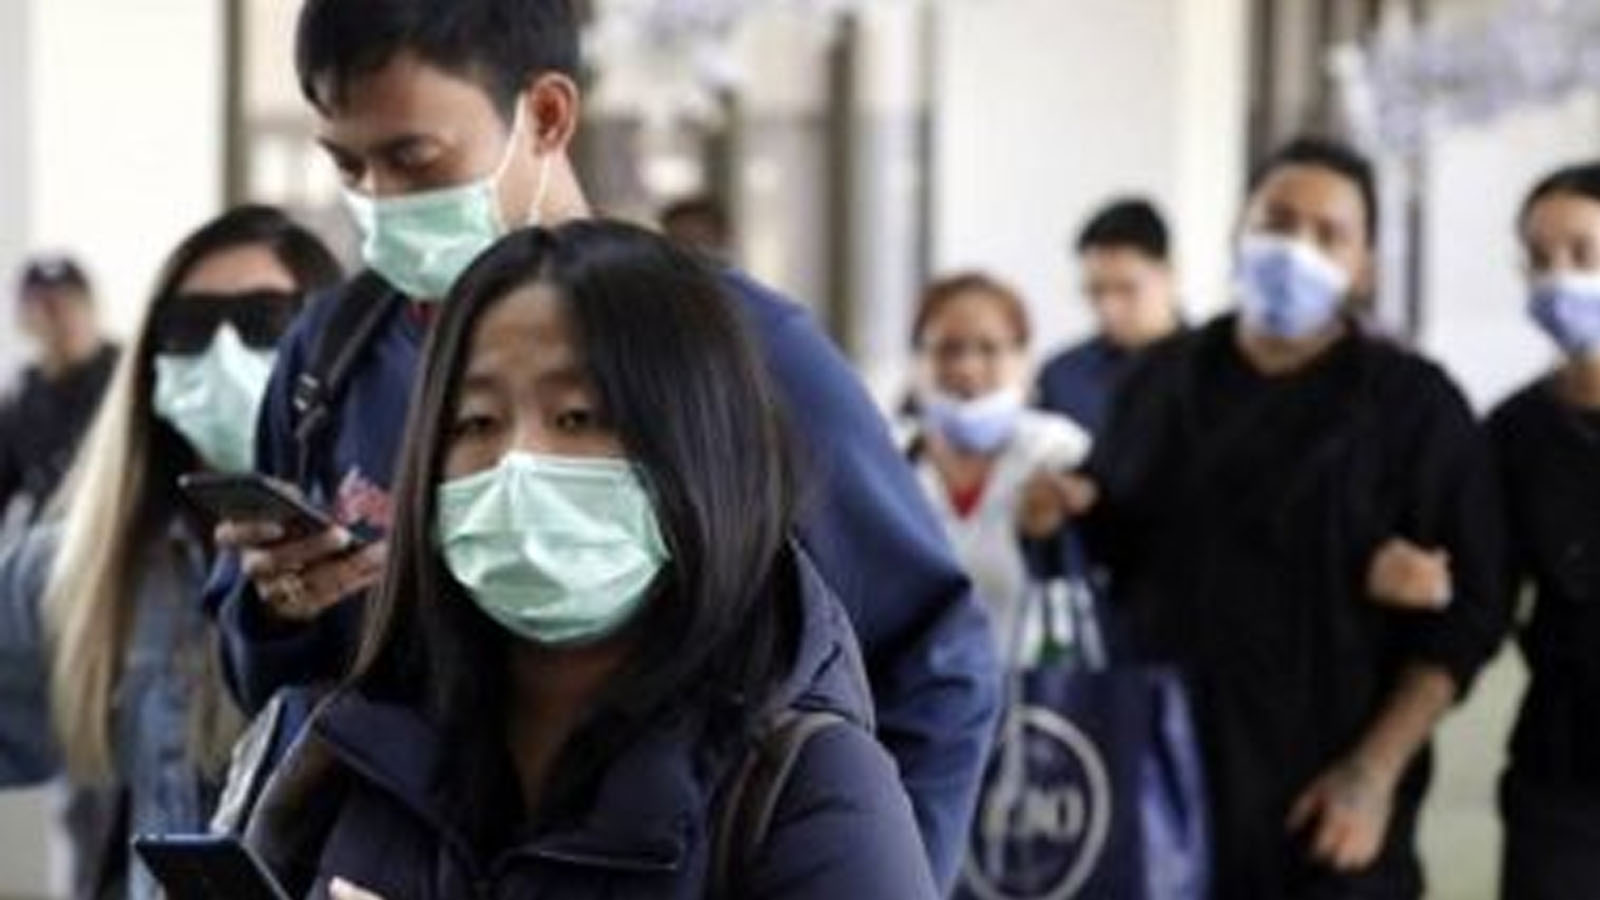 चीनमा फेरी भेटियो नयाँ भाईरस, हालसम्म ३५ जना संक्रमित